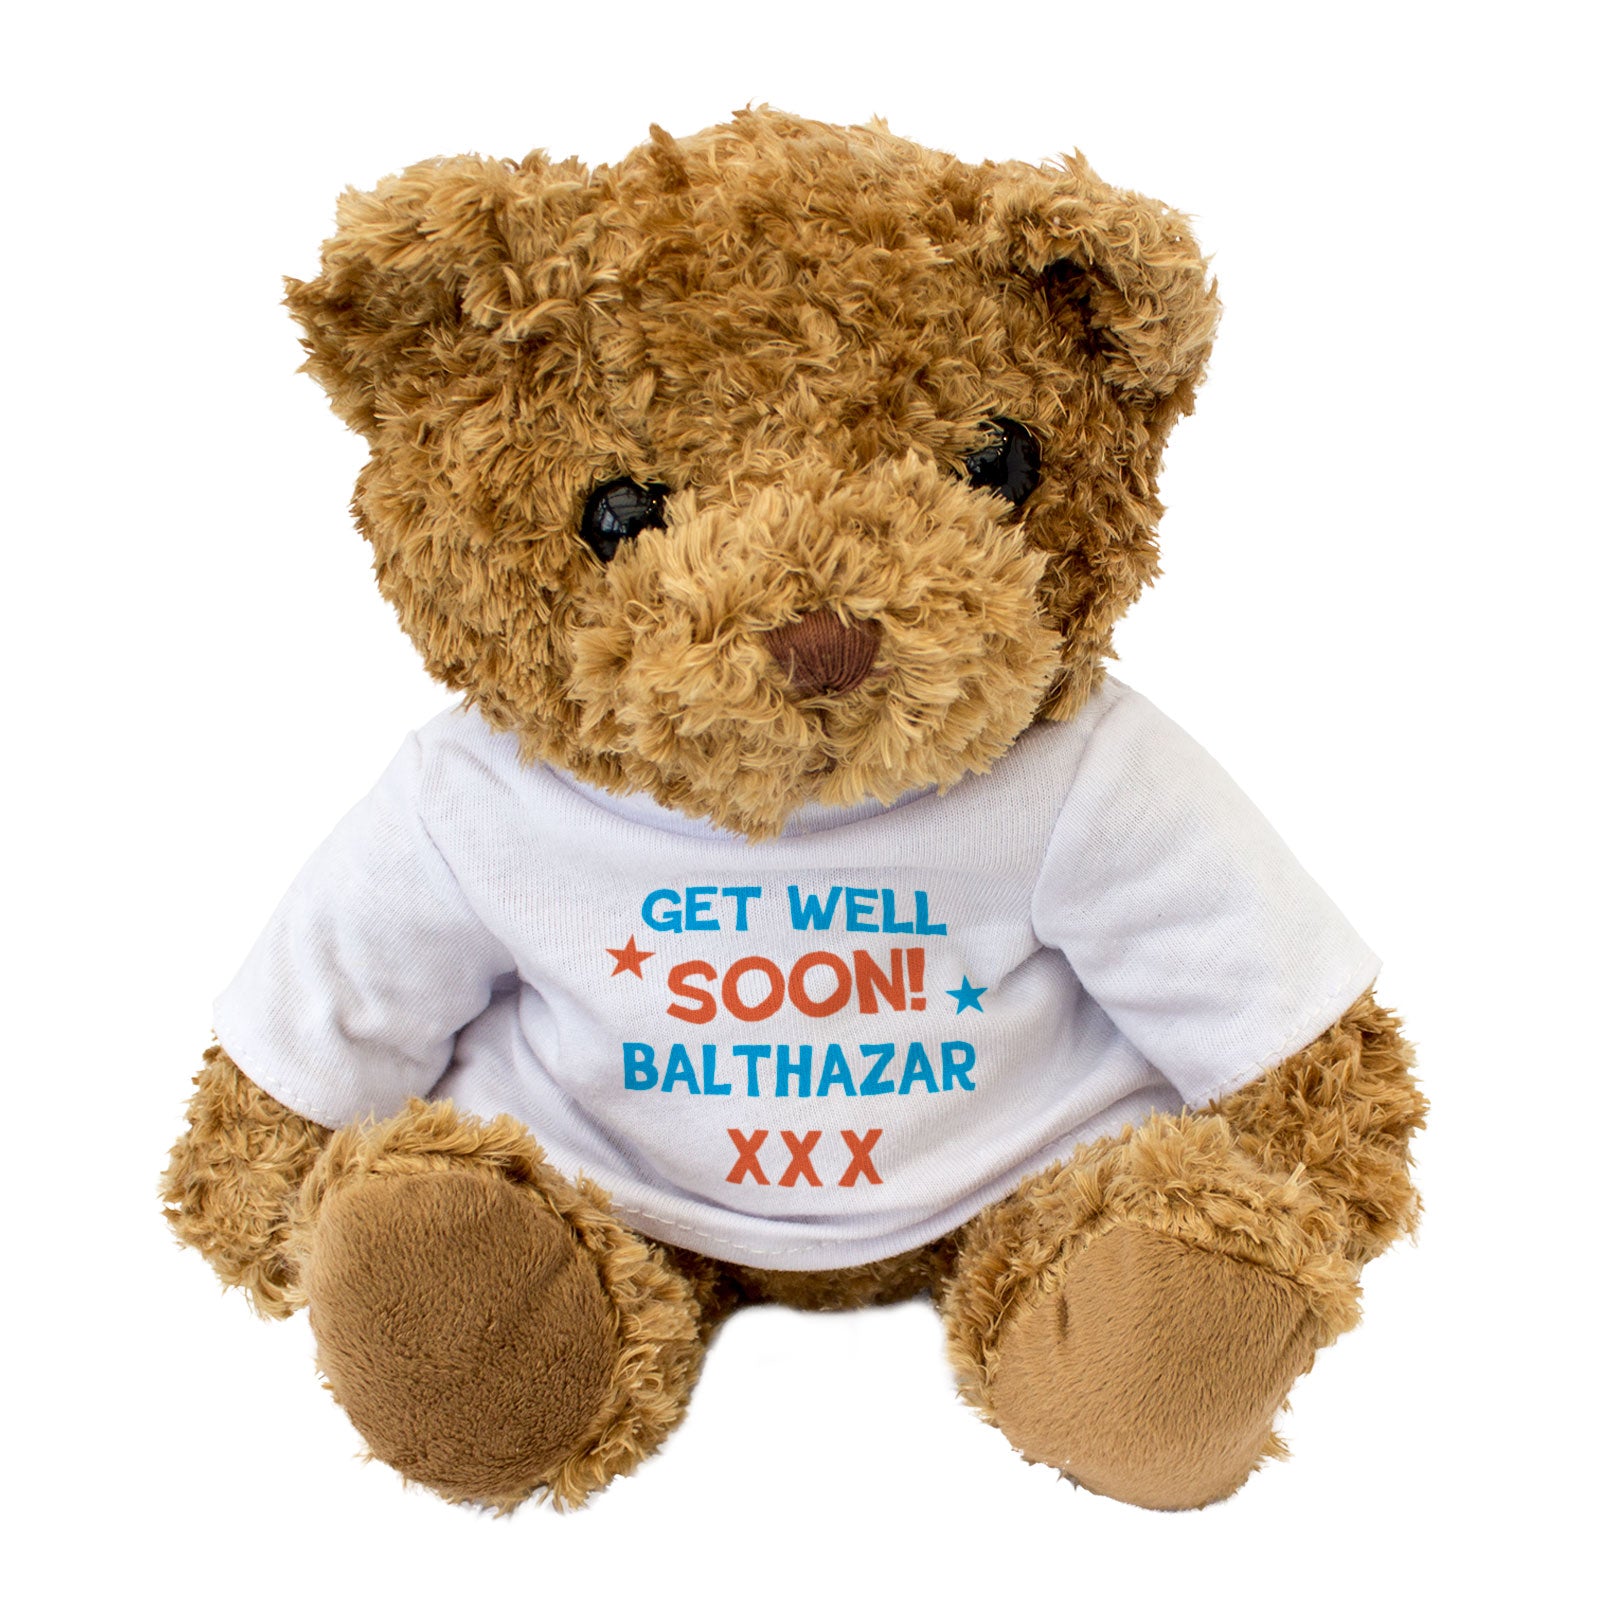 Get Well Soon Balthazar - Teddy Bear